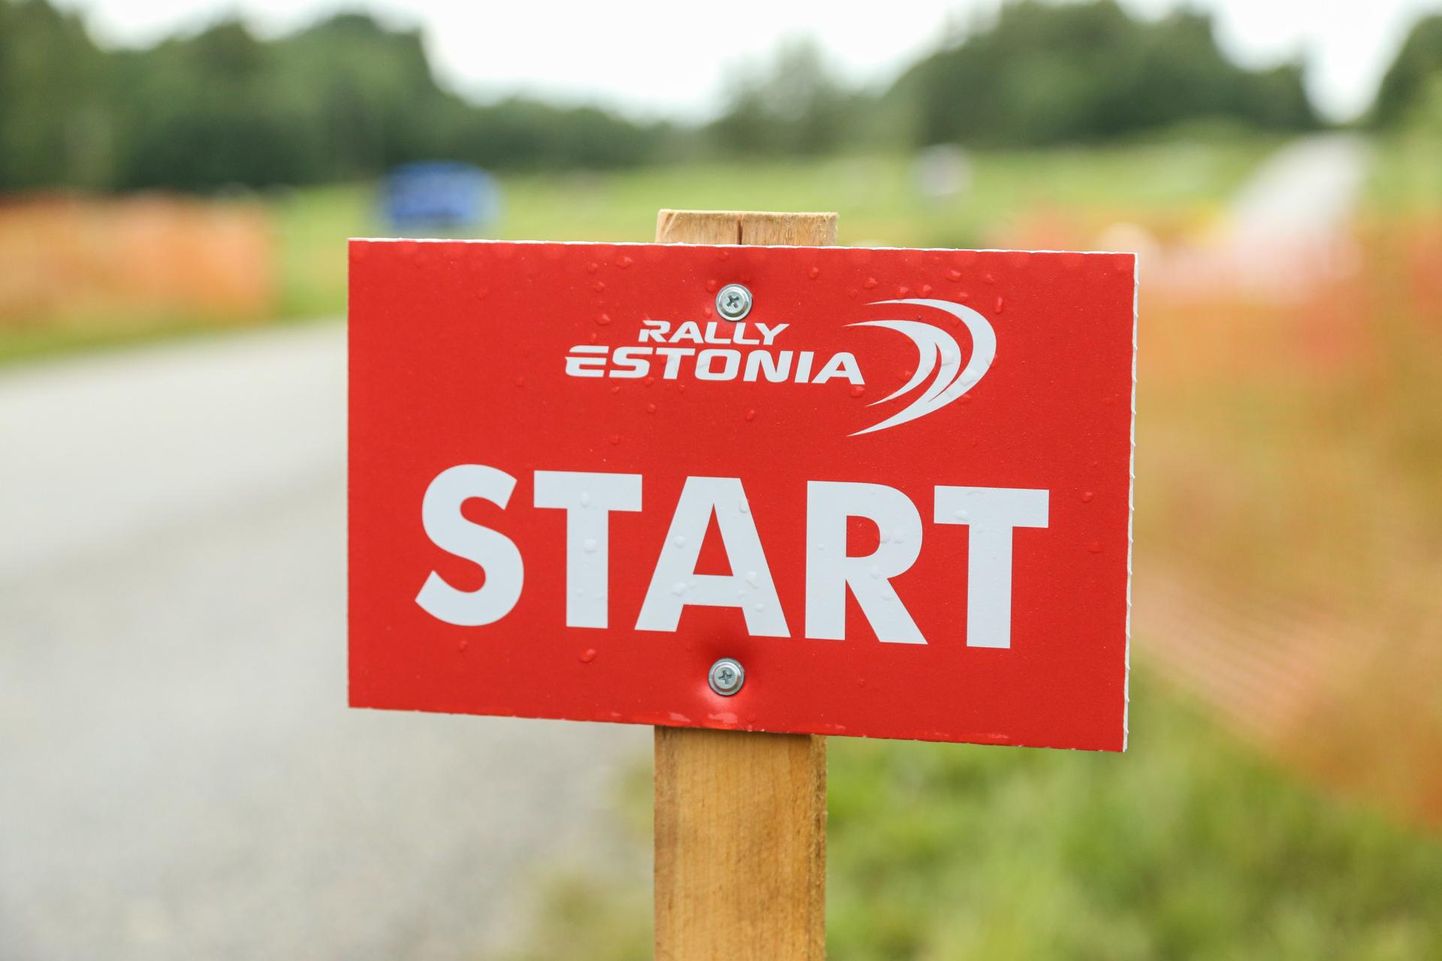 WRC autoralli etapp toimub Eestis tänavu teist korda. Kiiruskatsed leiavad aset Valga-, Tartu- ja Põlvamaal.